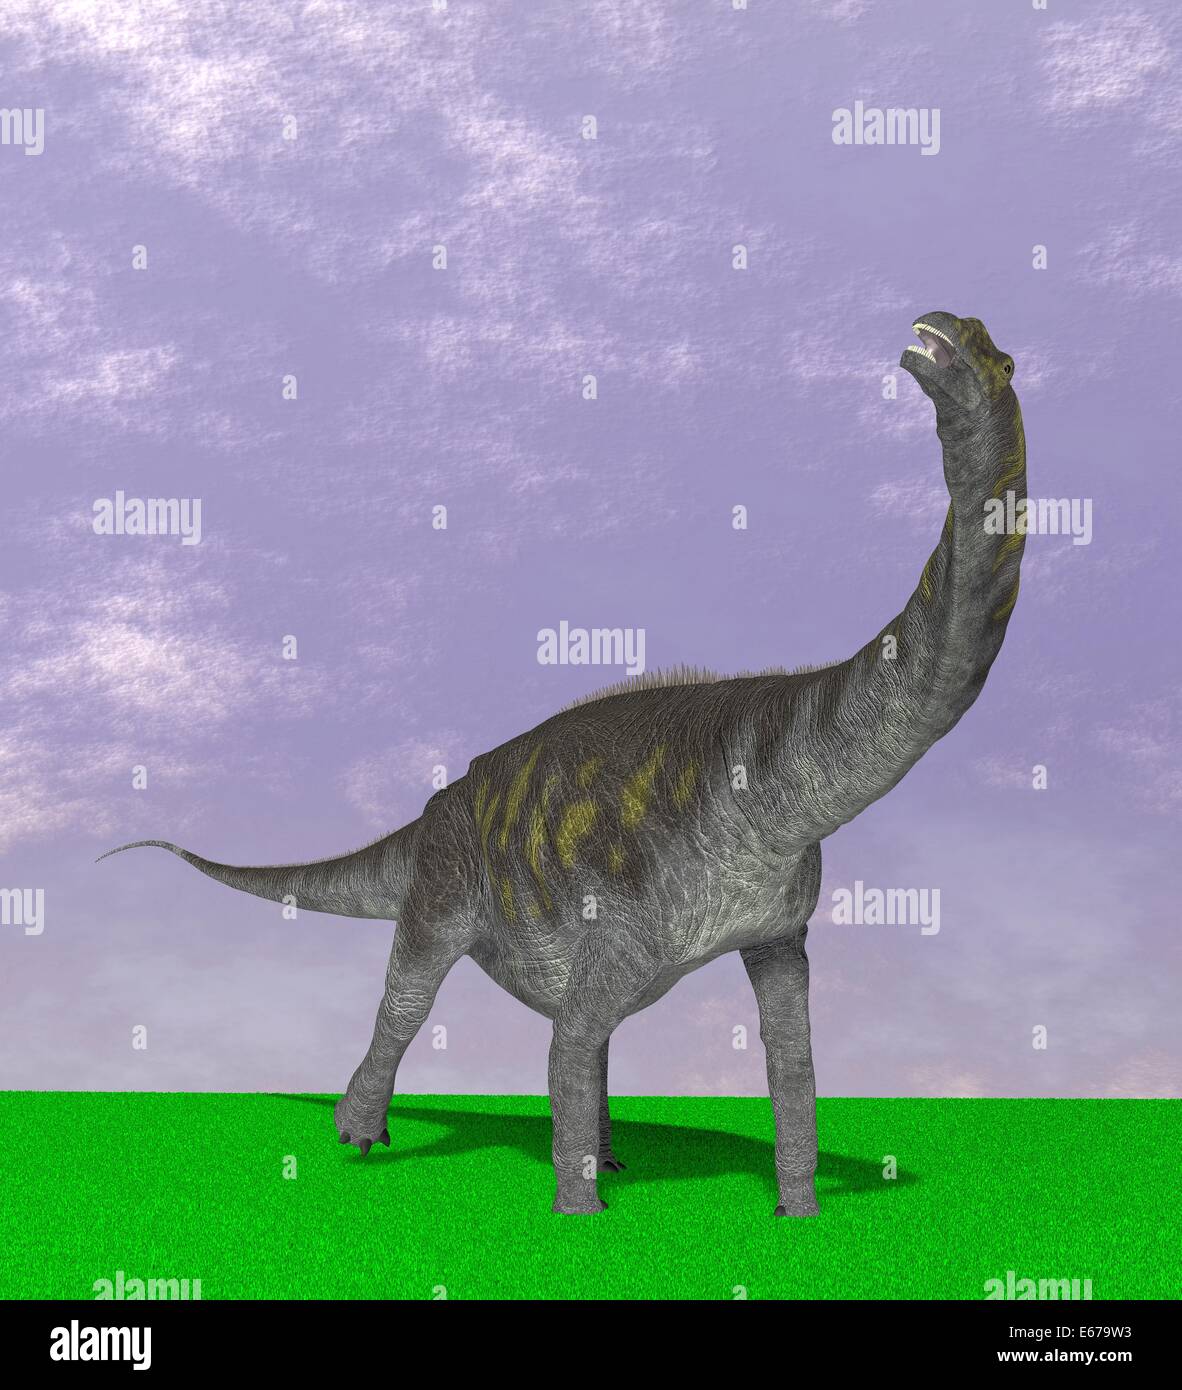 Dinosaurier Argentinosaurus / dinosaur Argentinosaurus Stock Photo